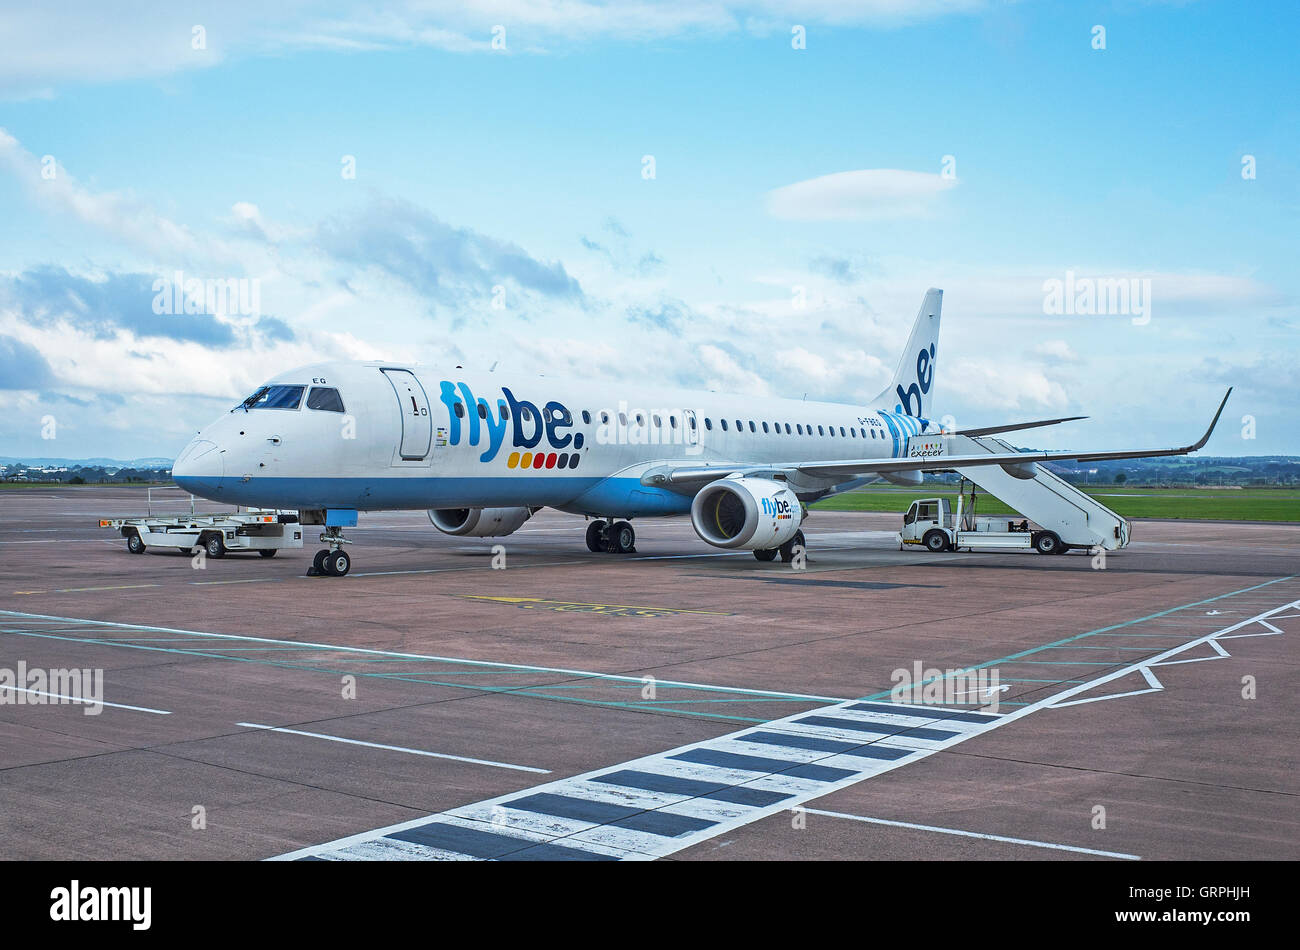 Un avion Flybe sur le tarmac de l'aéroport d'Exeter, Devon, England, UK Banque D'Images